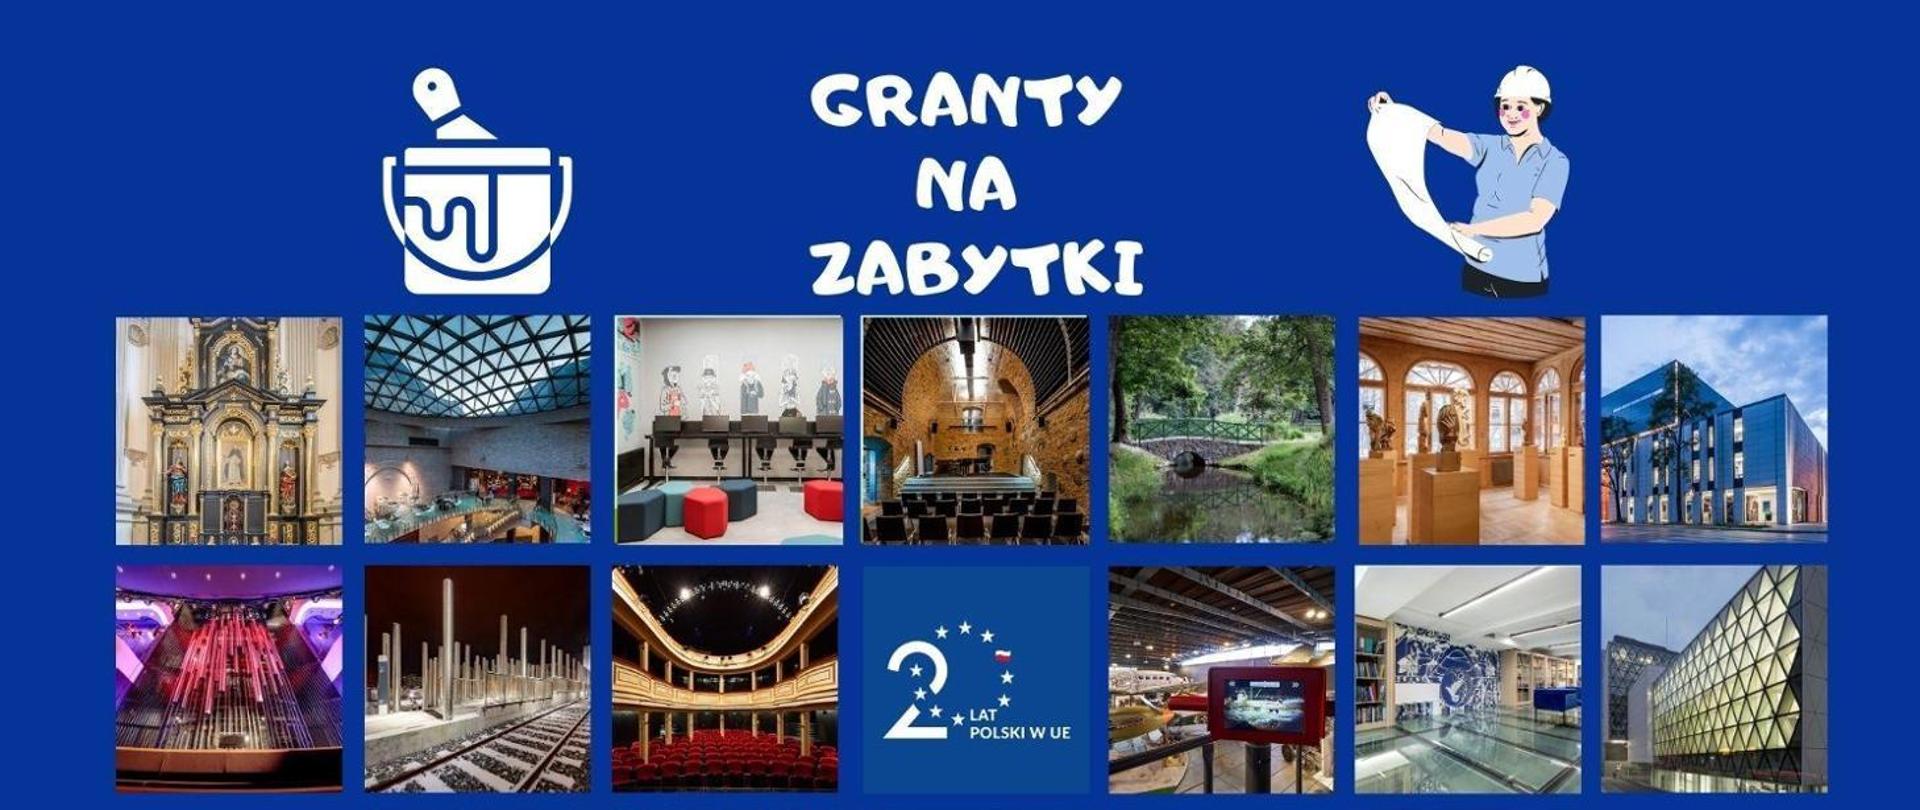 Grafika z tekstem „Granty na zabytki”. Zawiera 13 kwadratowych zdjęć z różnych lokalizacji oraz logotyp z treścią „20 lat Polski w UE”.